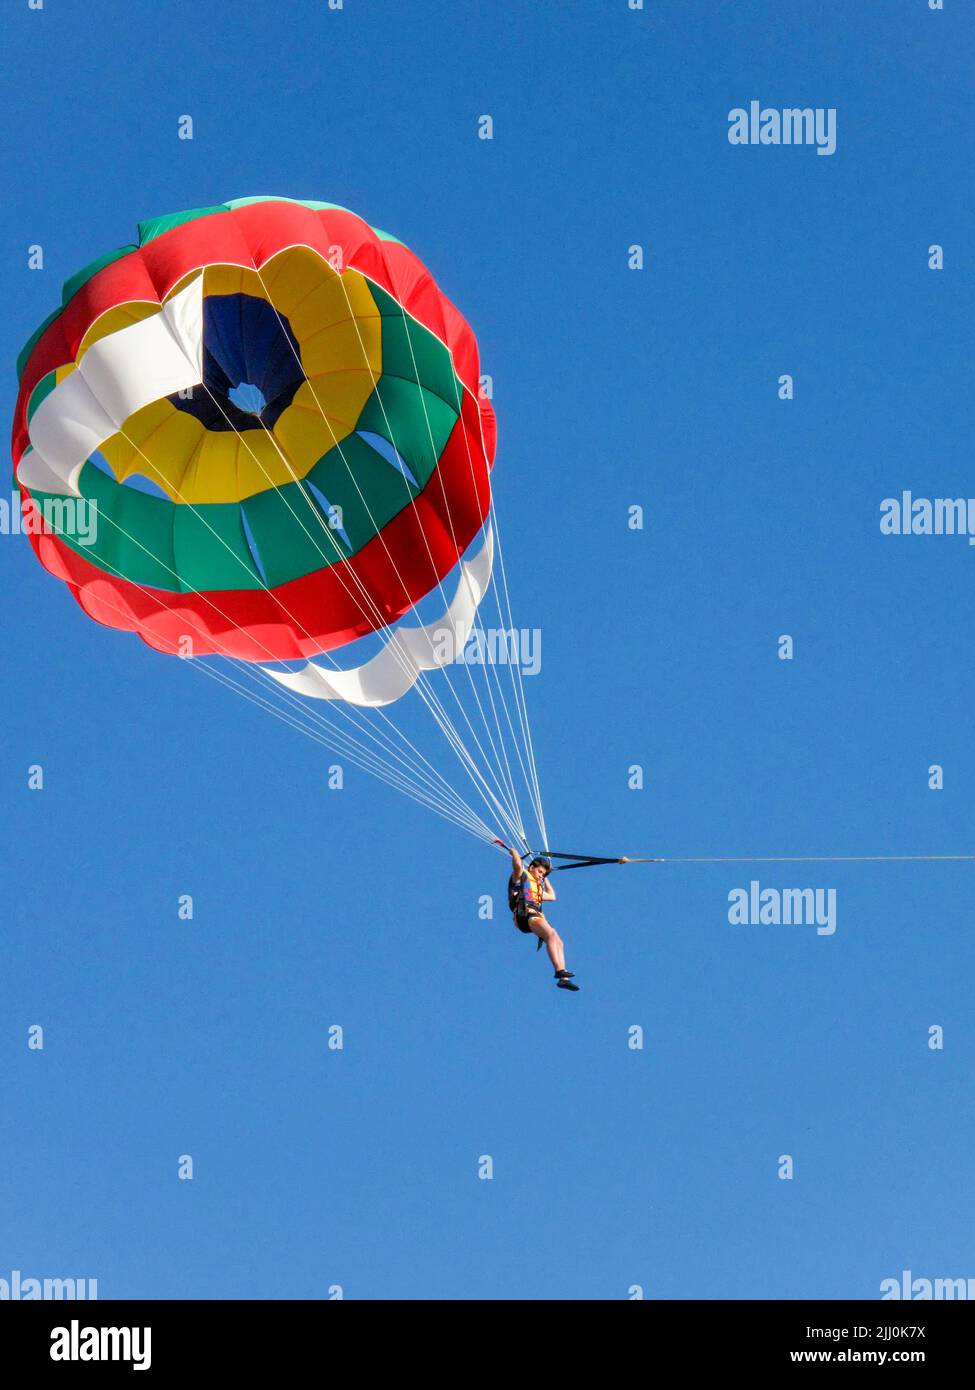 parasailing Stock Photo